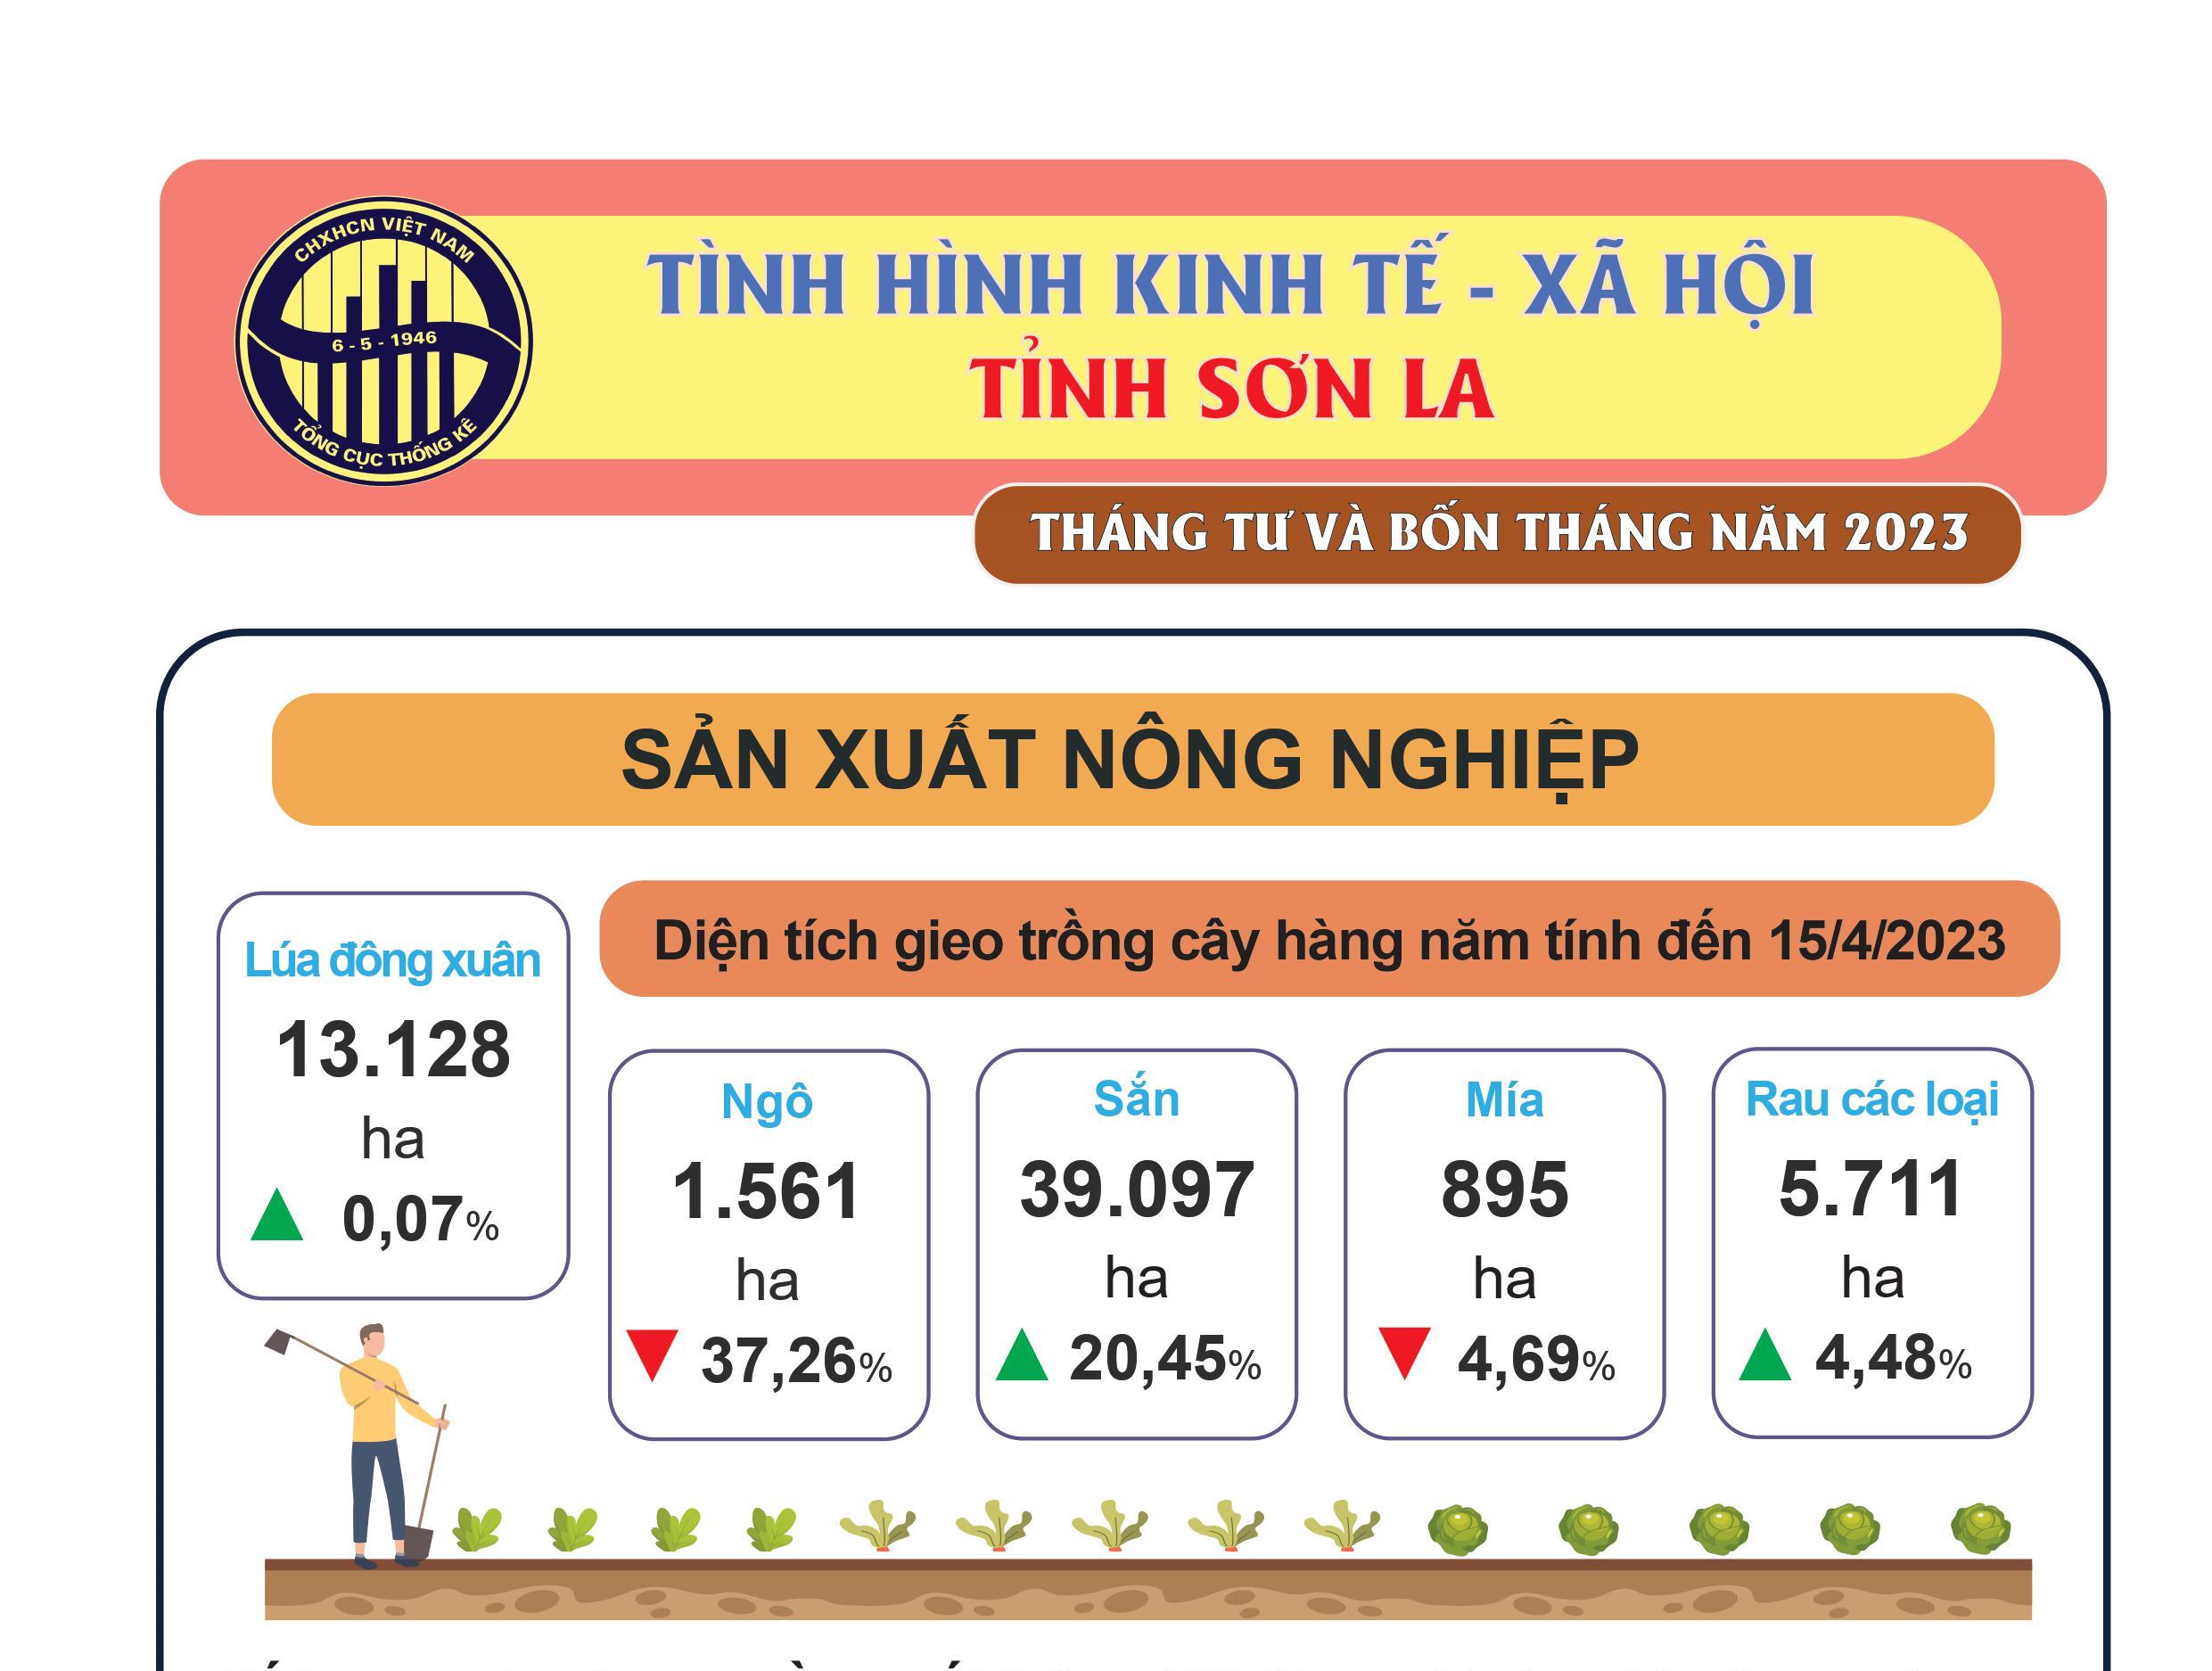 Tình hình kinh tế - xã hội tỉnh Sơn La tháng 04 và 4 tháng đầu năm 2023